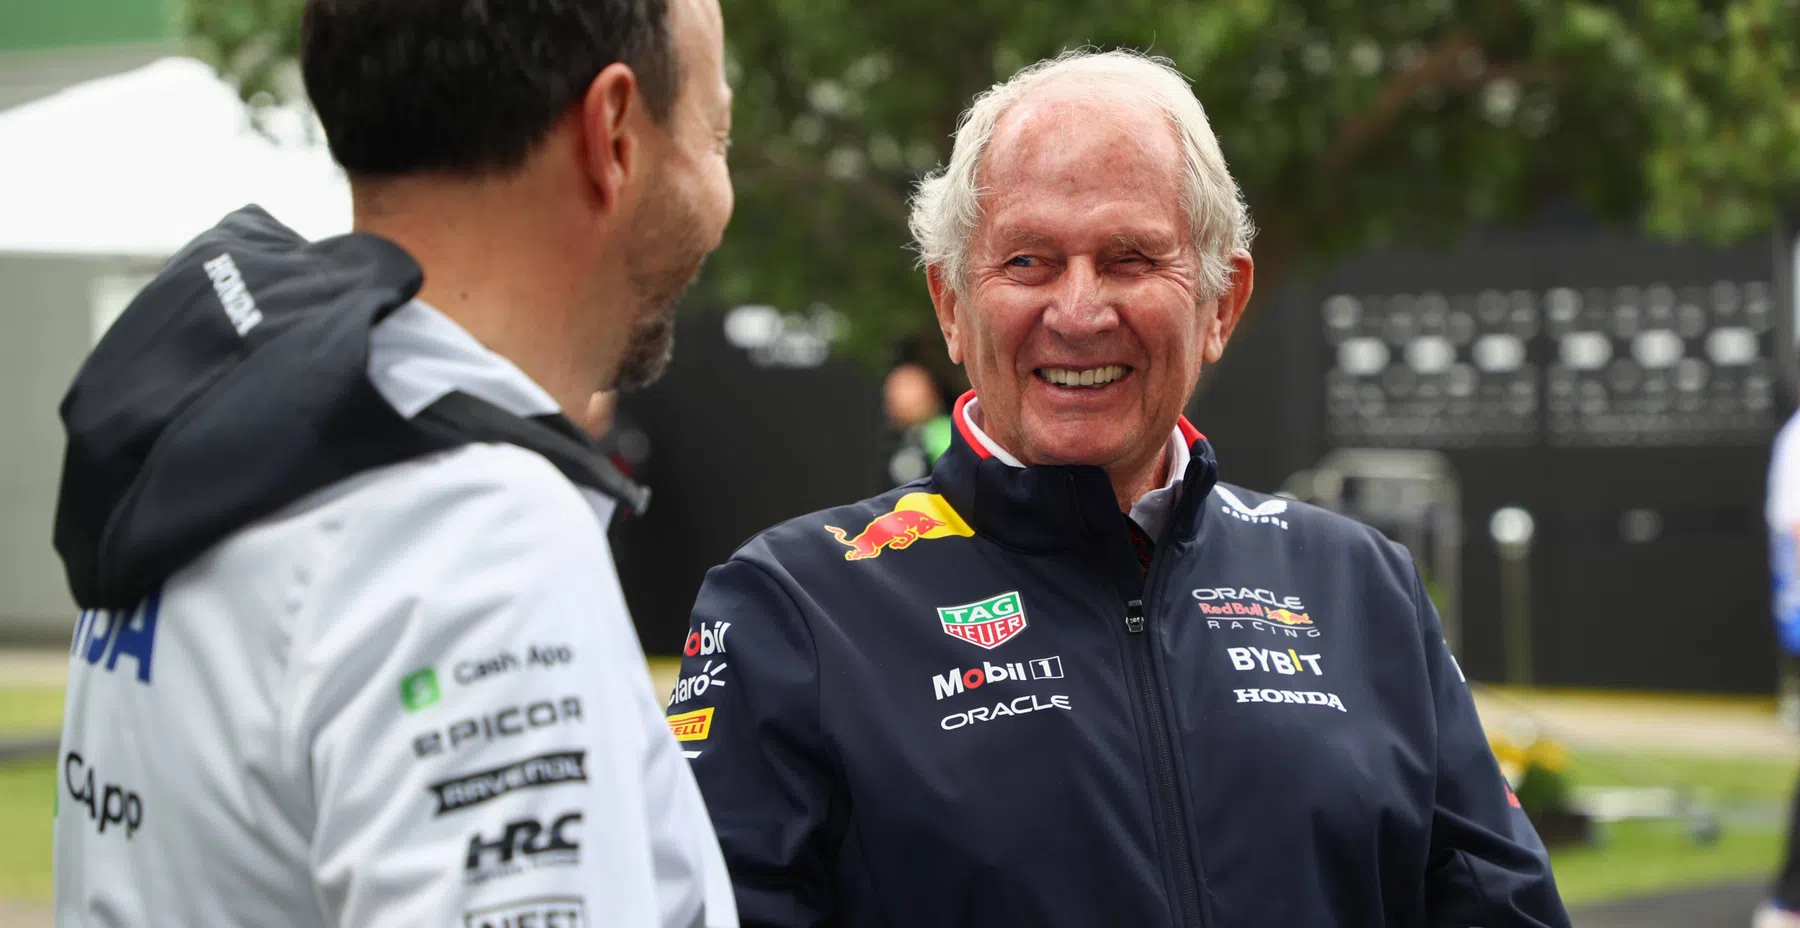 Helmut Marko expressa clara preferência pelo companheiro de equipe de Verstappens na Red Bull